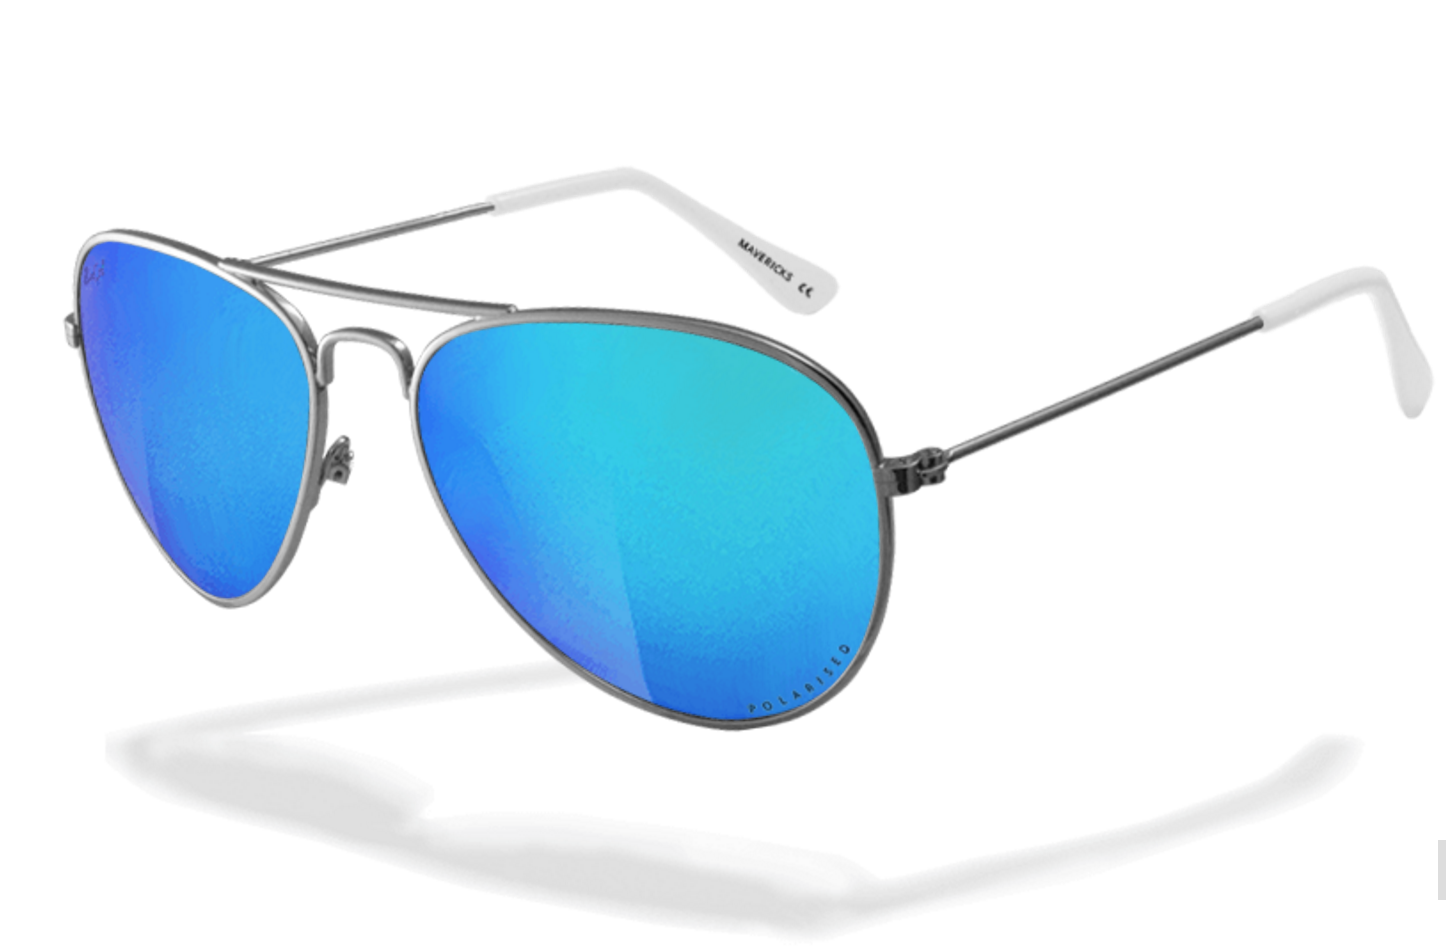 (Concours) Découvrez le nouveau modèle Mavericks de SunGod & gagnez 3 paires de lunettes customisables & garanties à vie